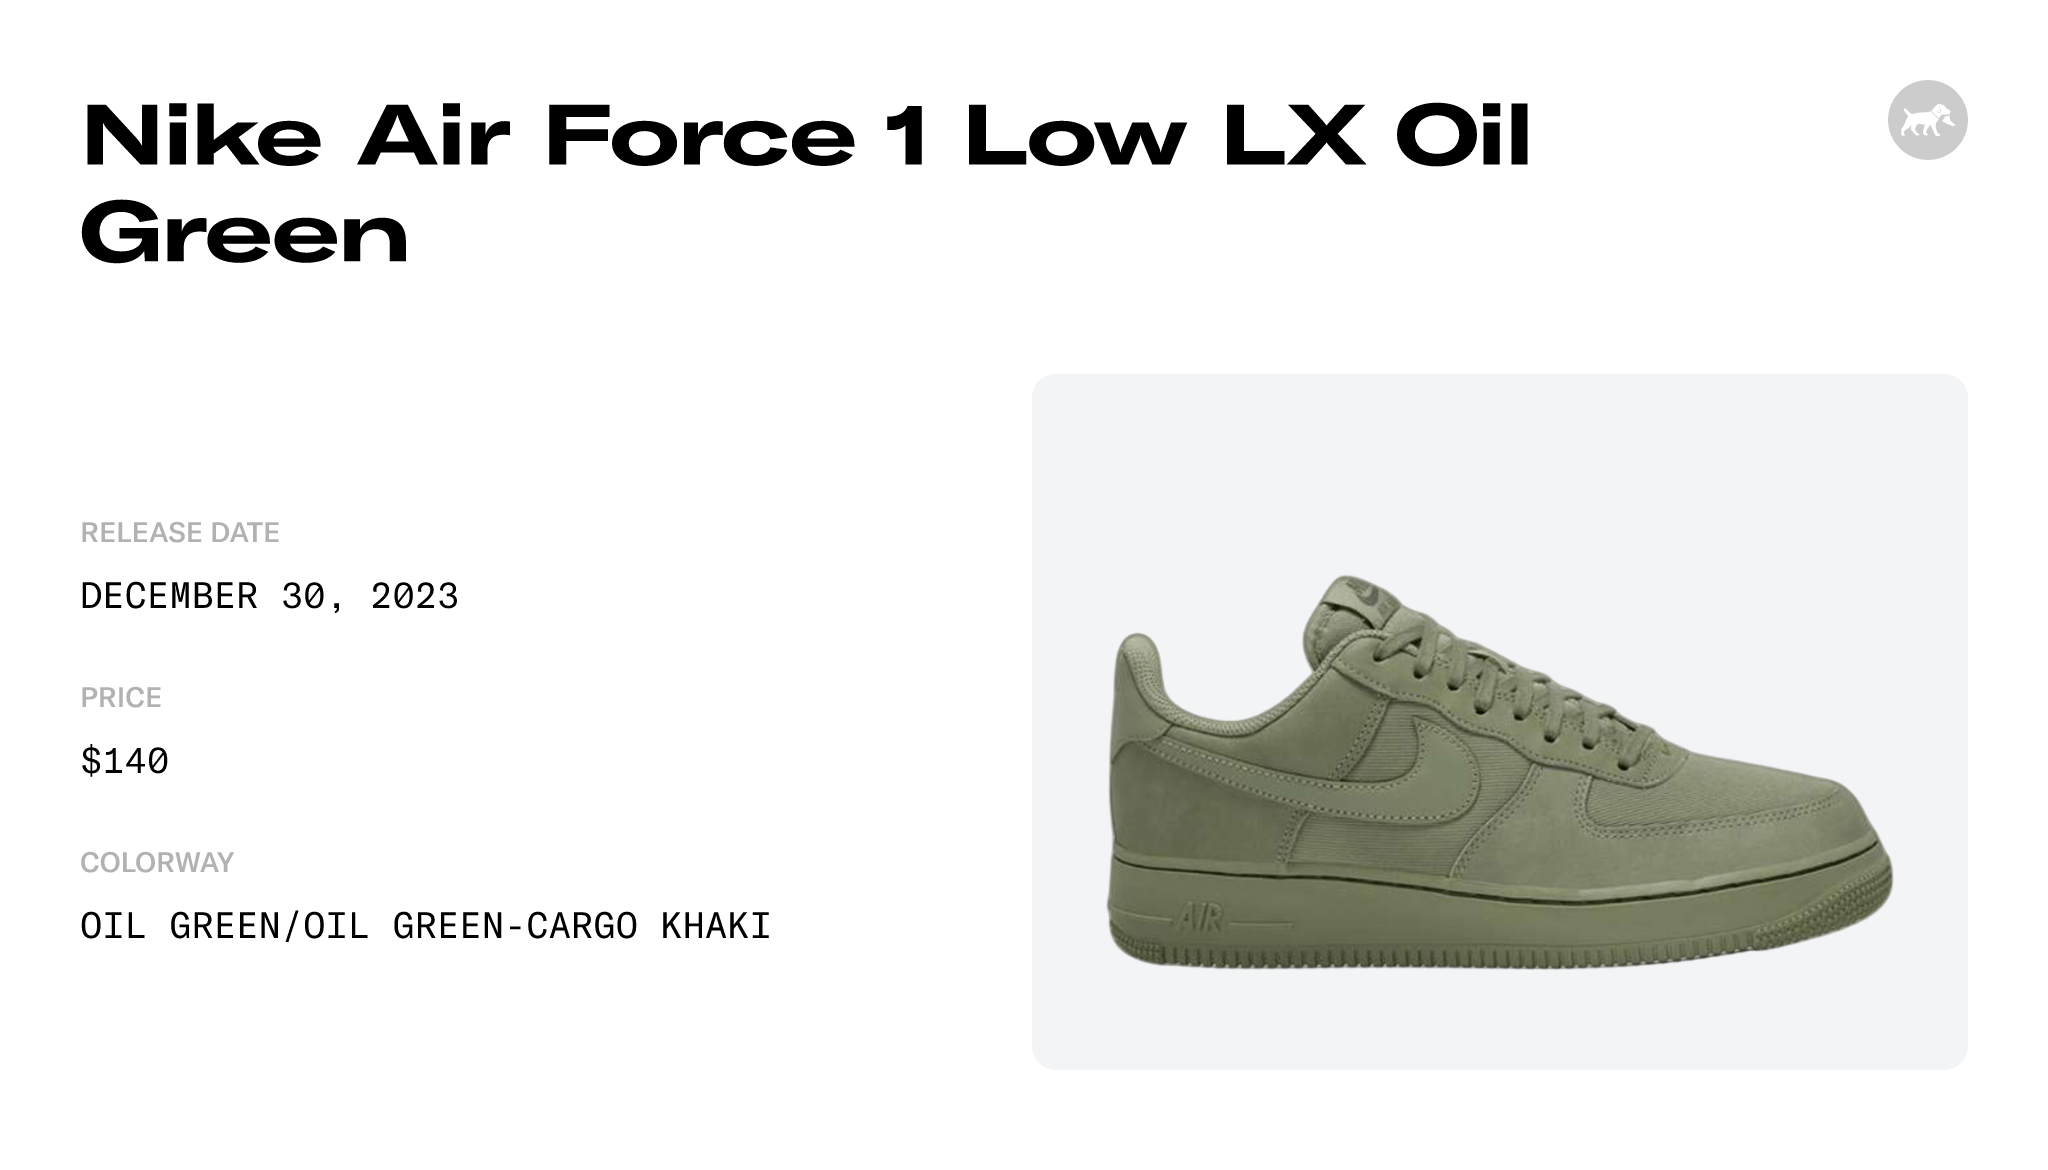 Nike Air Force 1 Low PRM Oil Green FB8876-300